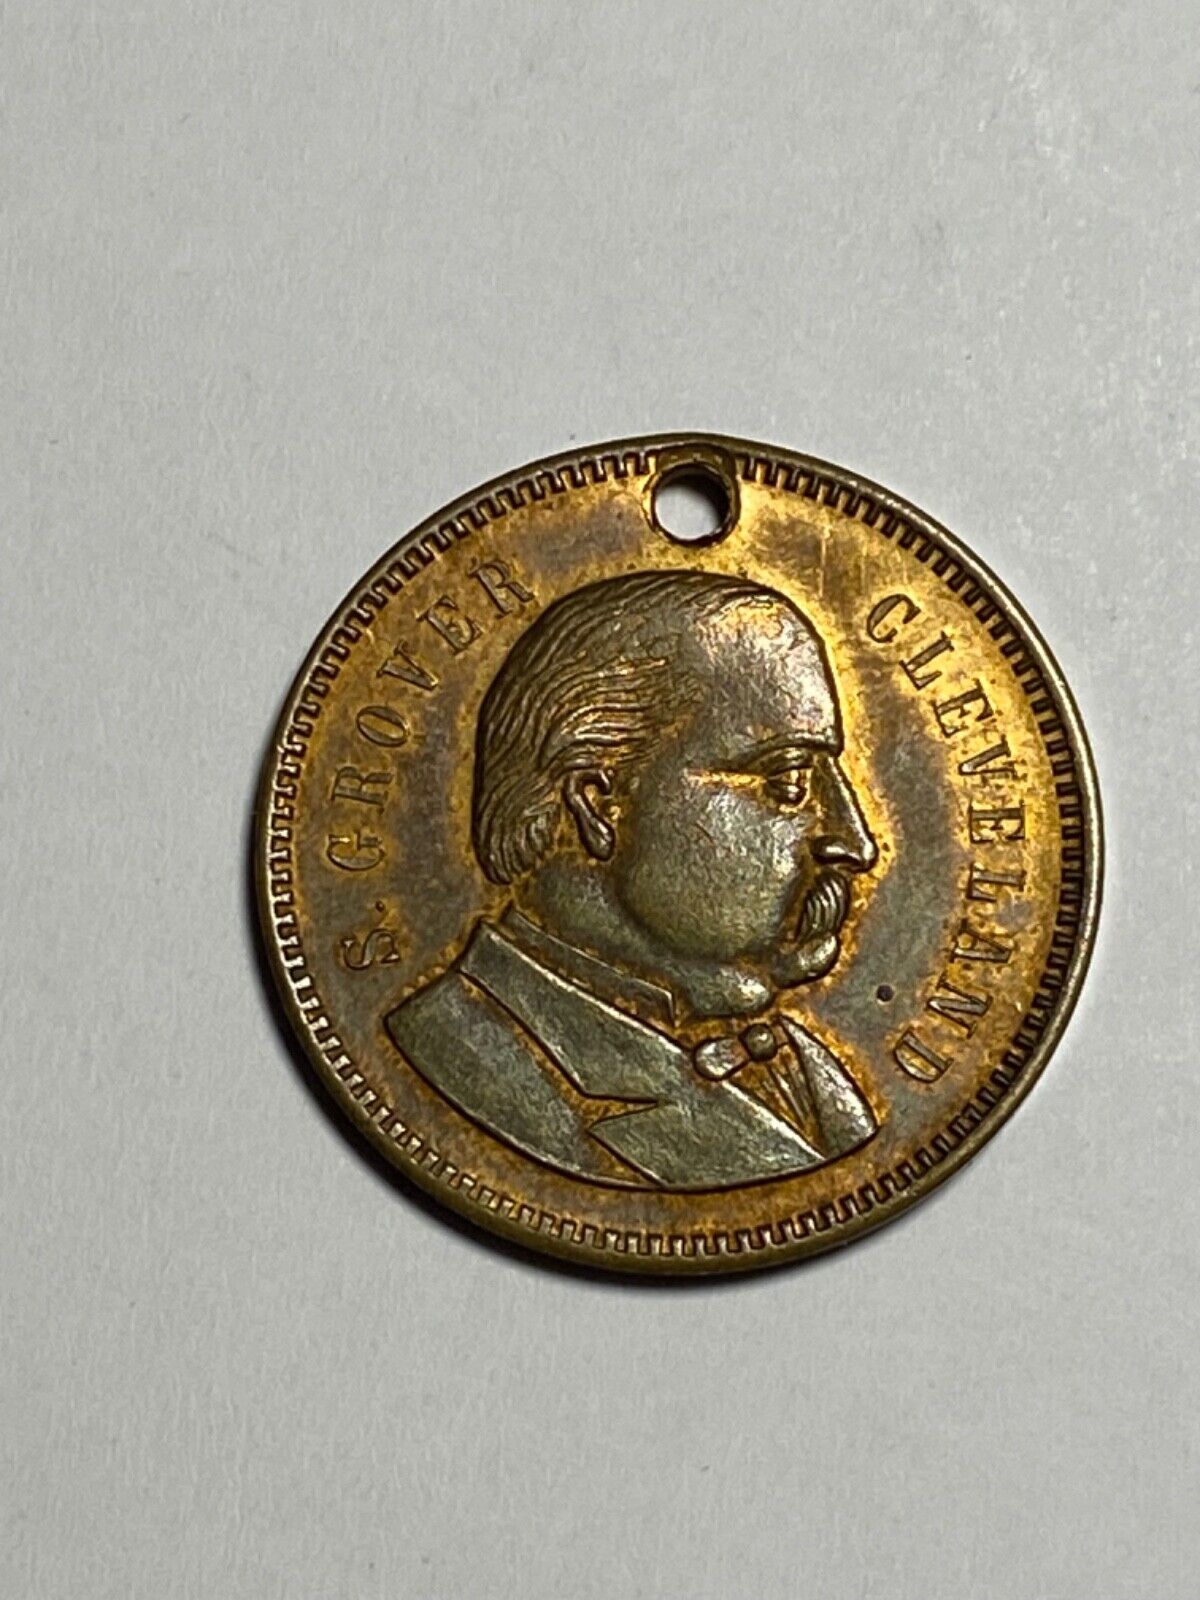 1888 Grover Cleveland presidential campaign token GC 1888-7(a)